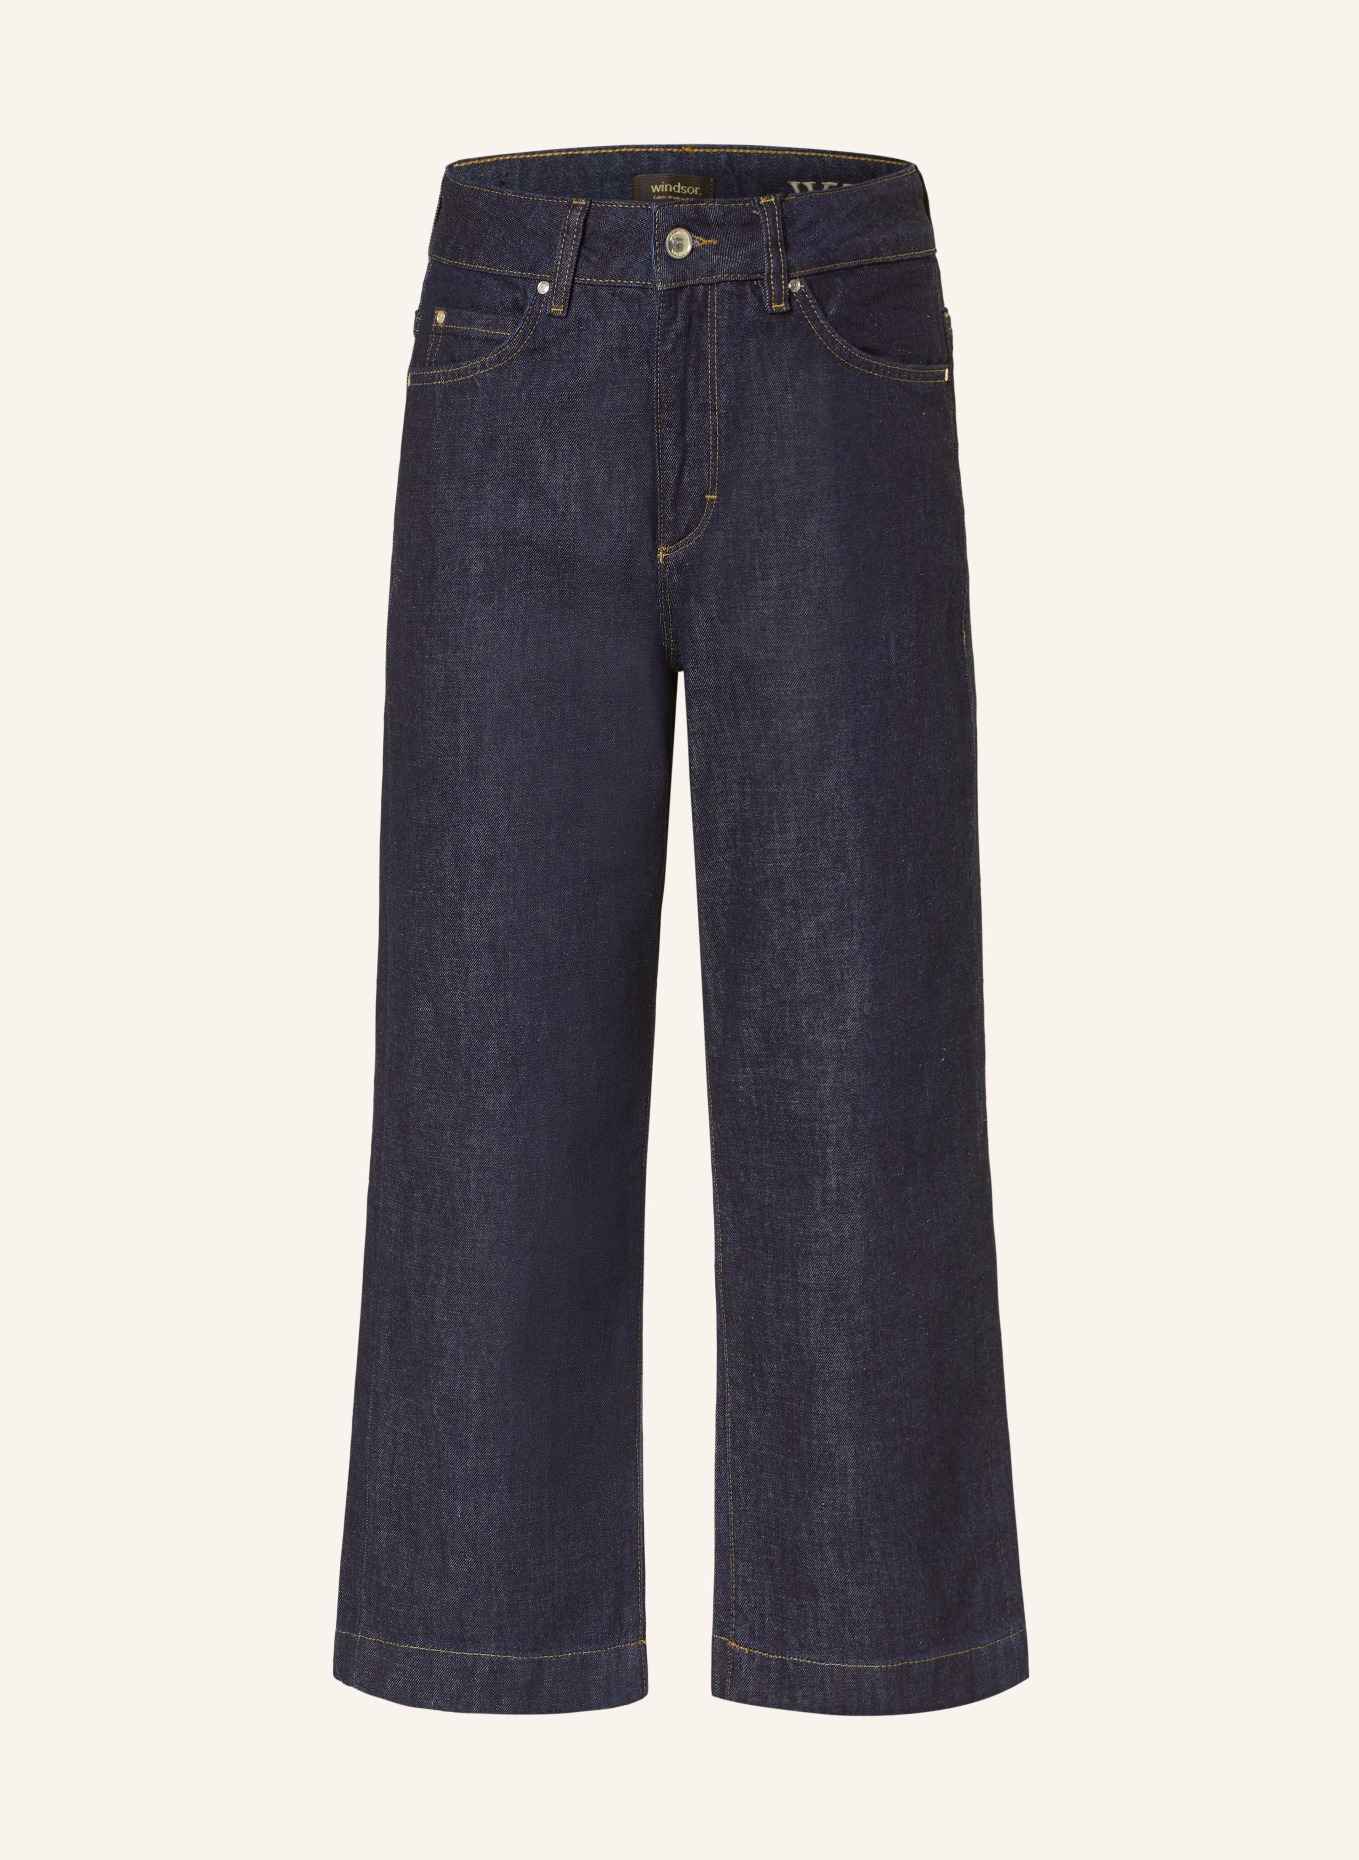 windsor. Culotte jeans, Color: 402 Dark Blue                  402 (Image 1)